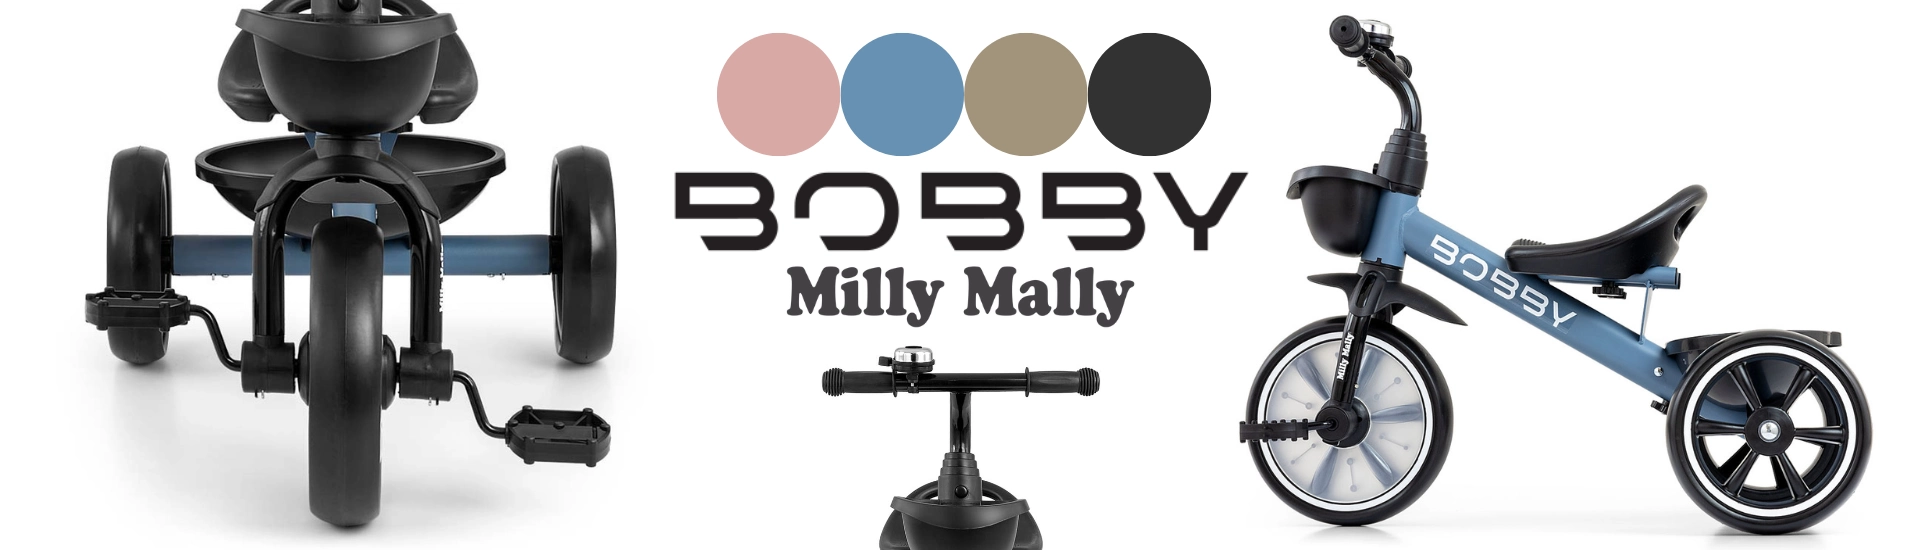 bobby-baner-1920-x-550-px-